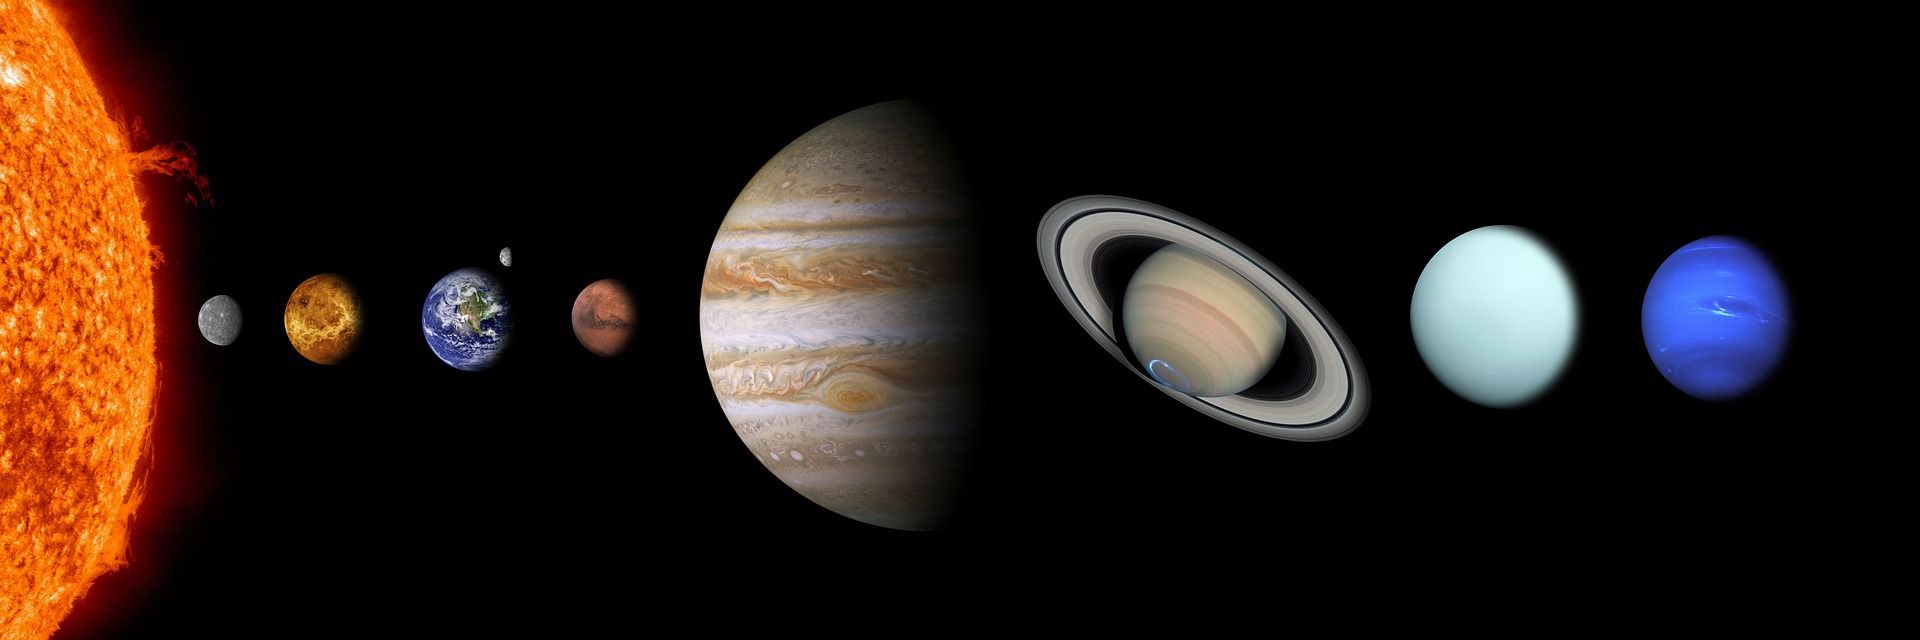 Планеты 1 и 2 группы. Меркурий в солнечной системе.